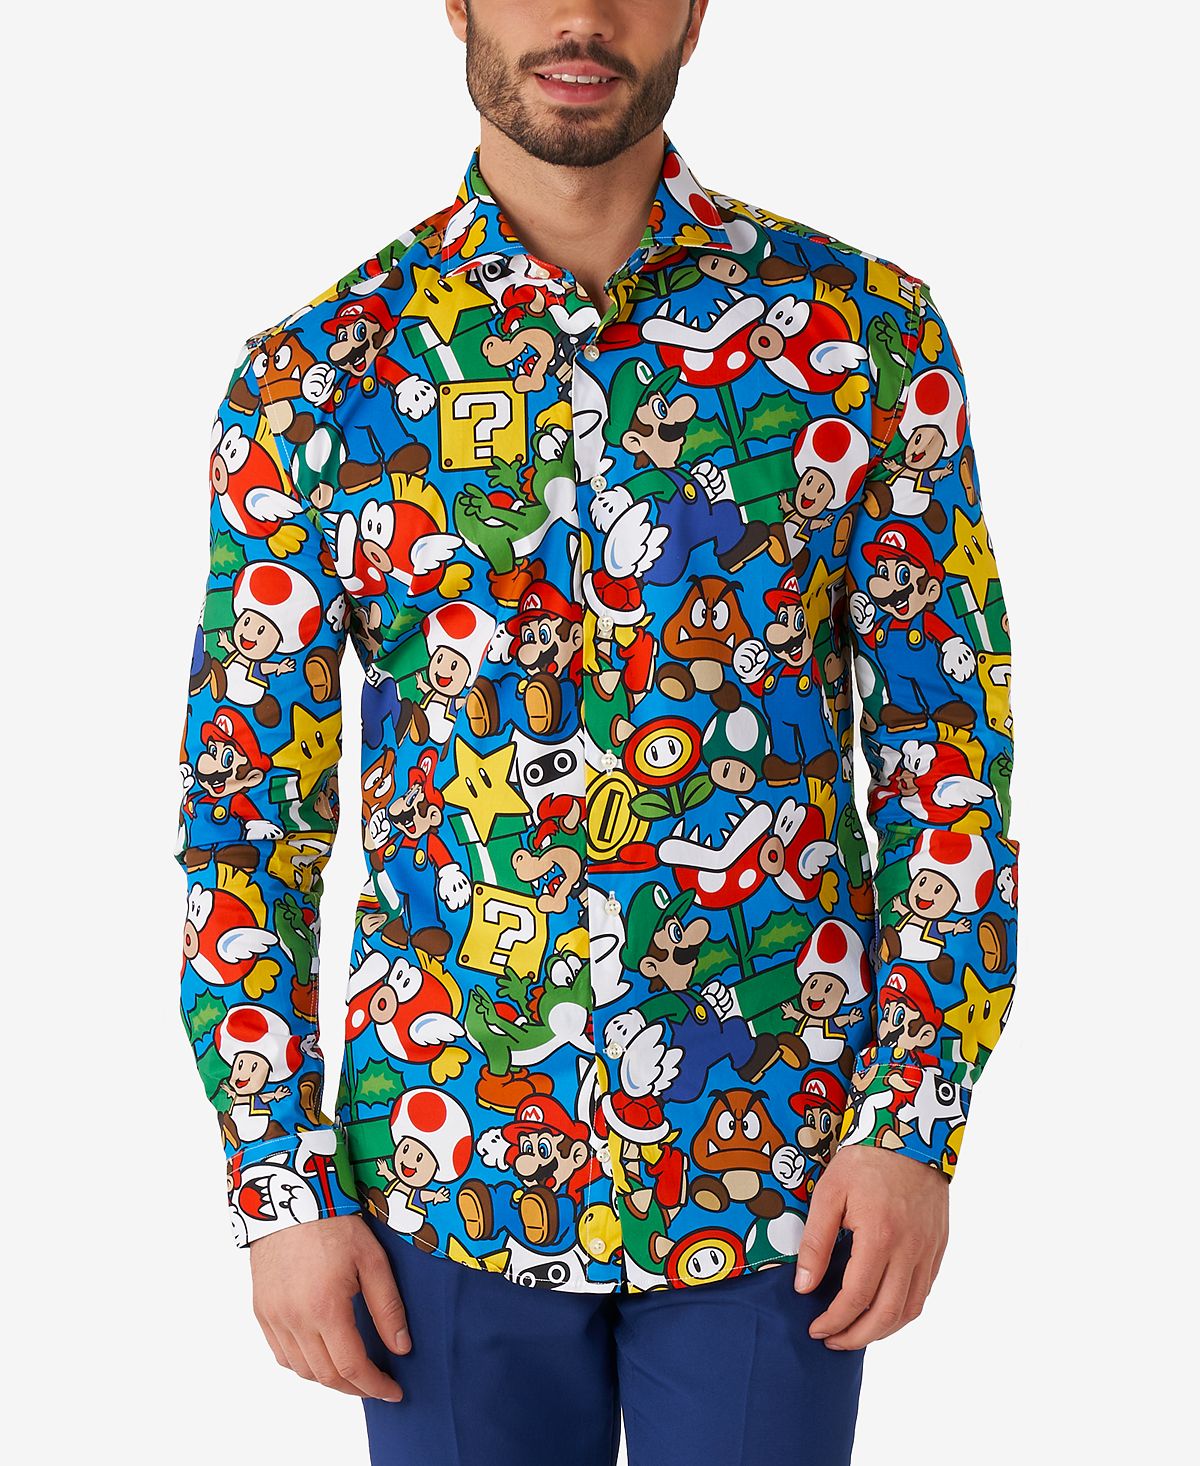 Мужская классическая рубашка nintendo с лицензией super mario OppoSuits игровой набор castillo de lava super mario nintendo jakks pacific